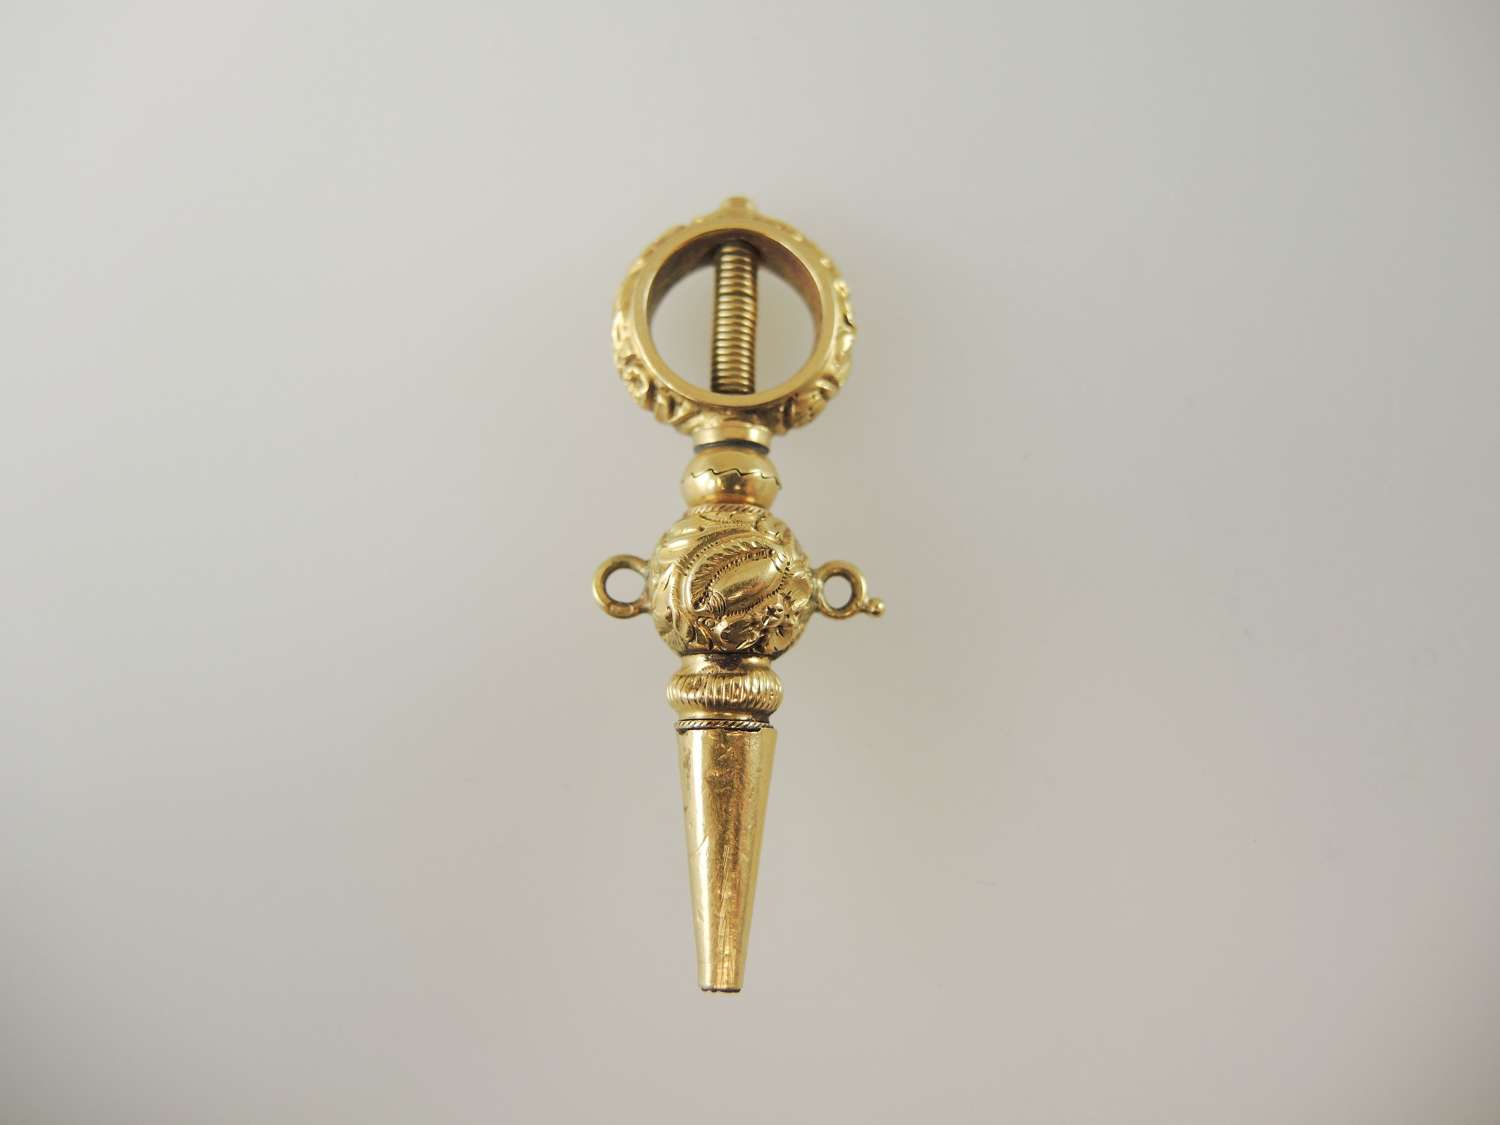 Large impressive gold Breguet pocket watch key c1820